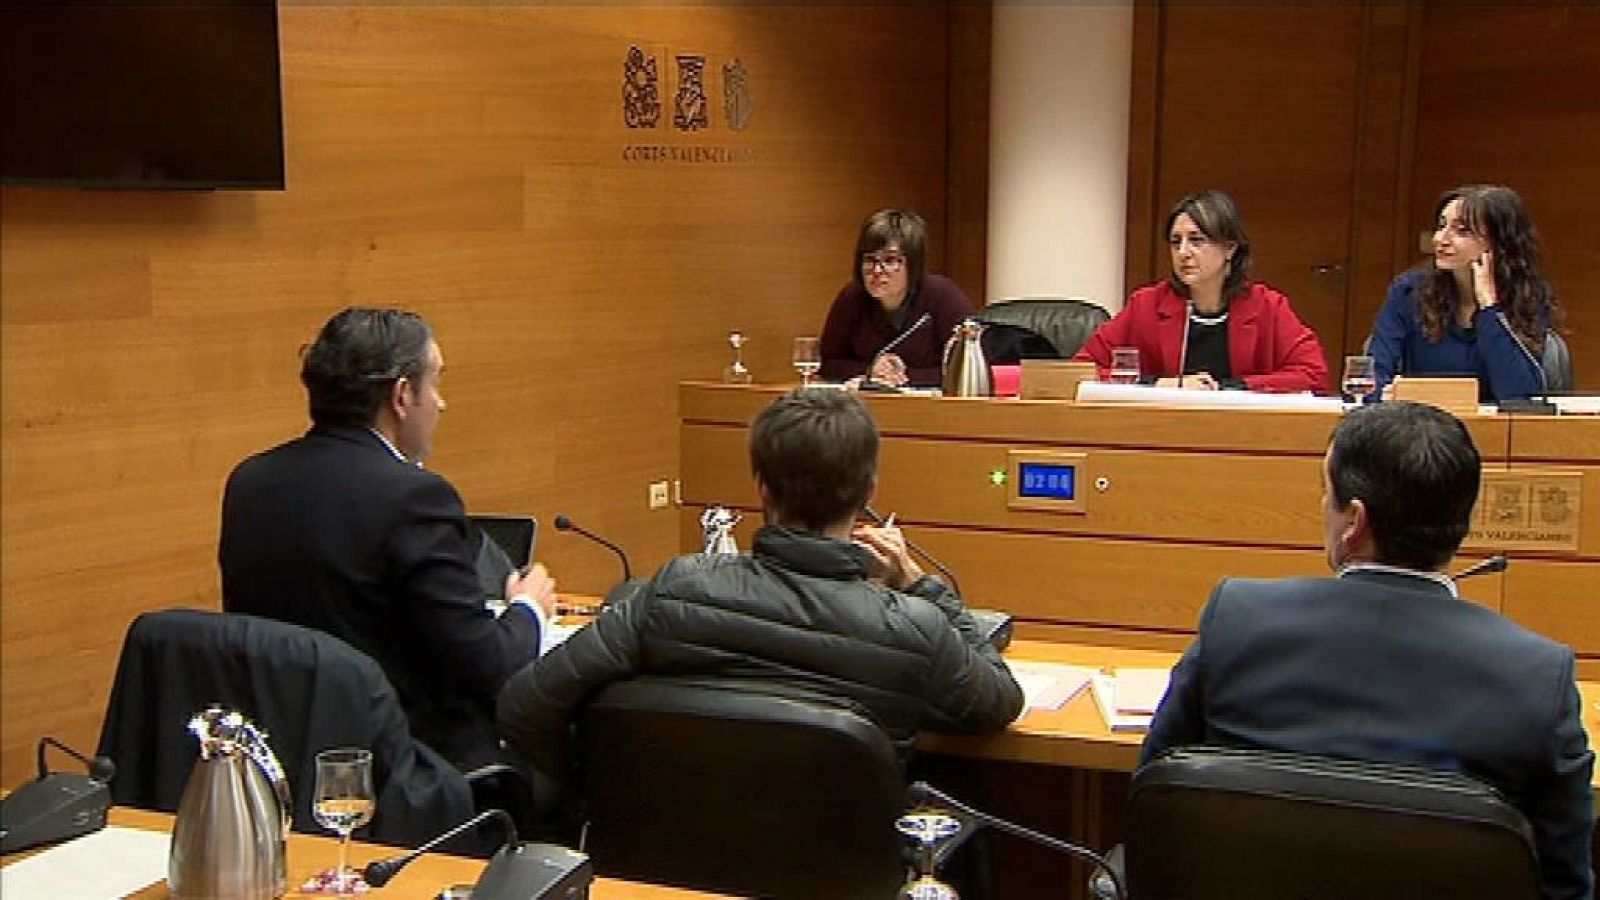 L'informatiu - Comunitat Valenciana: L'Informatiu - Comunitat Valenciana - 17/12/18 | RTVE Play